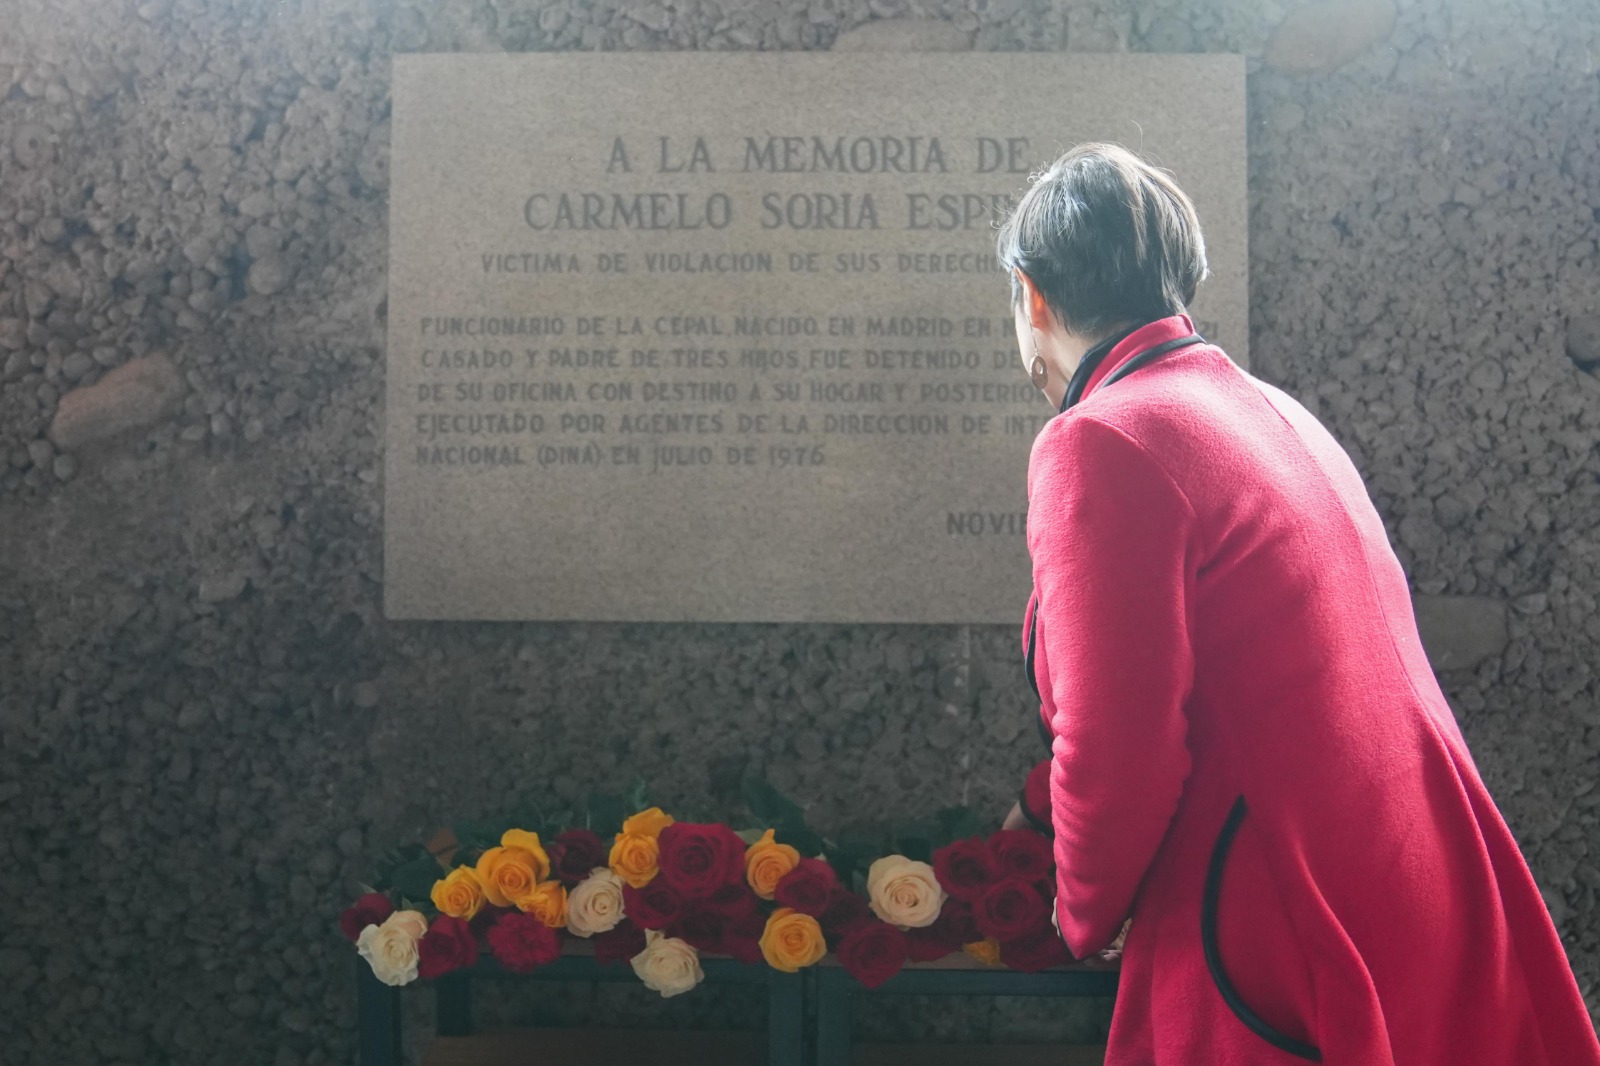 Fotografía de la Placa Soria, memorial en homenaje a Carmelo Soria Espinosa.